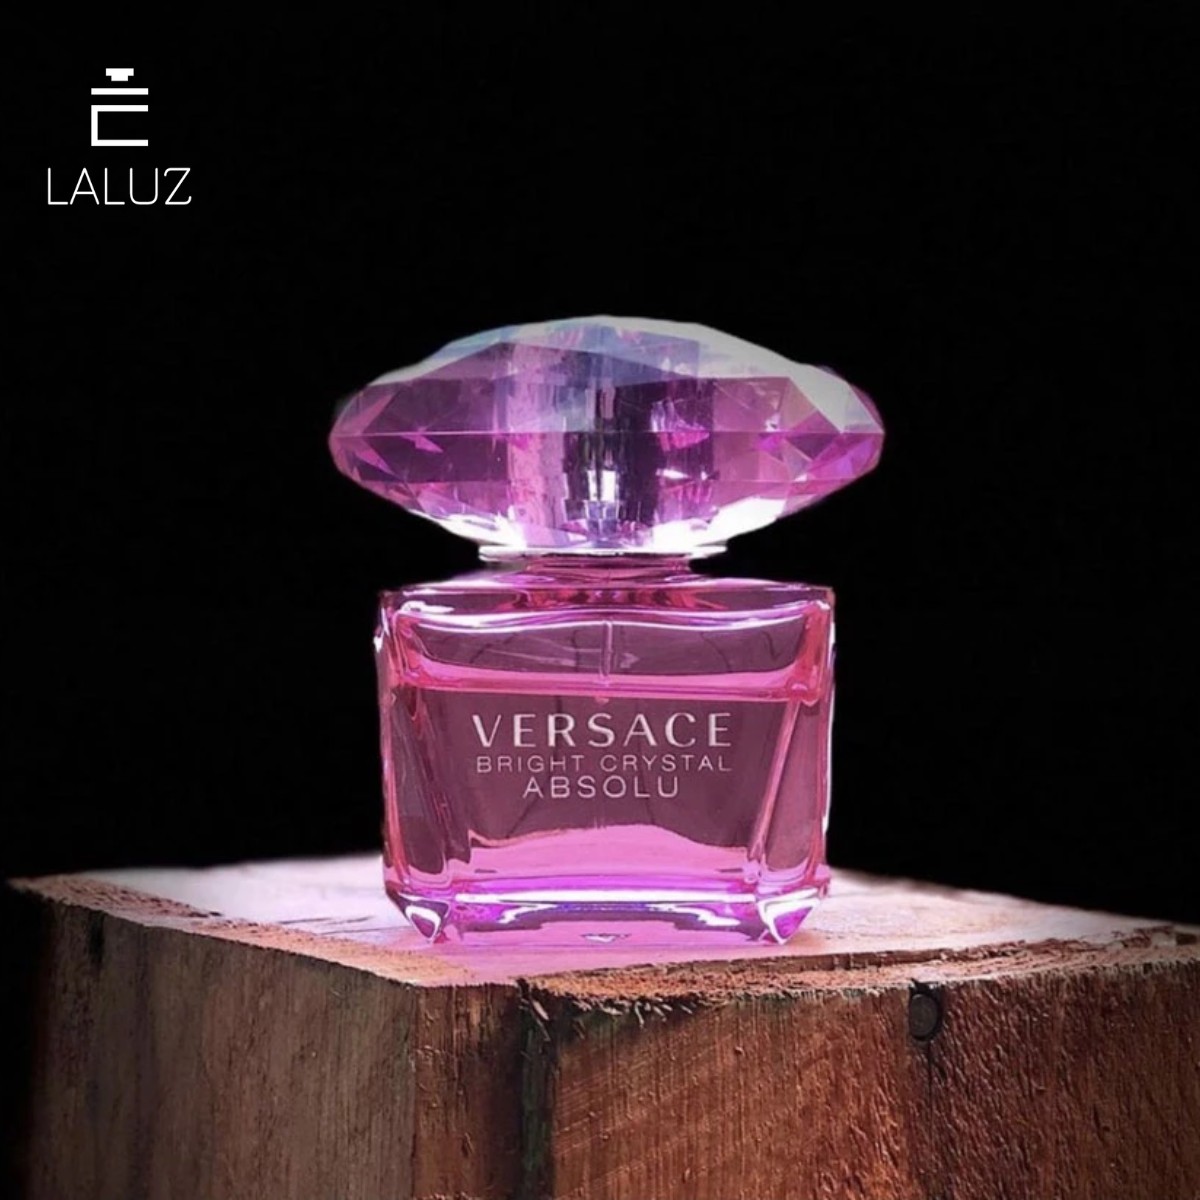 Nước hoa Versace Bright Crystal Absolu phù hợp với phụ nữ trên 25 tuổi